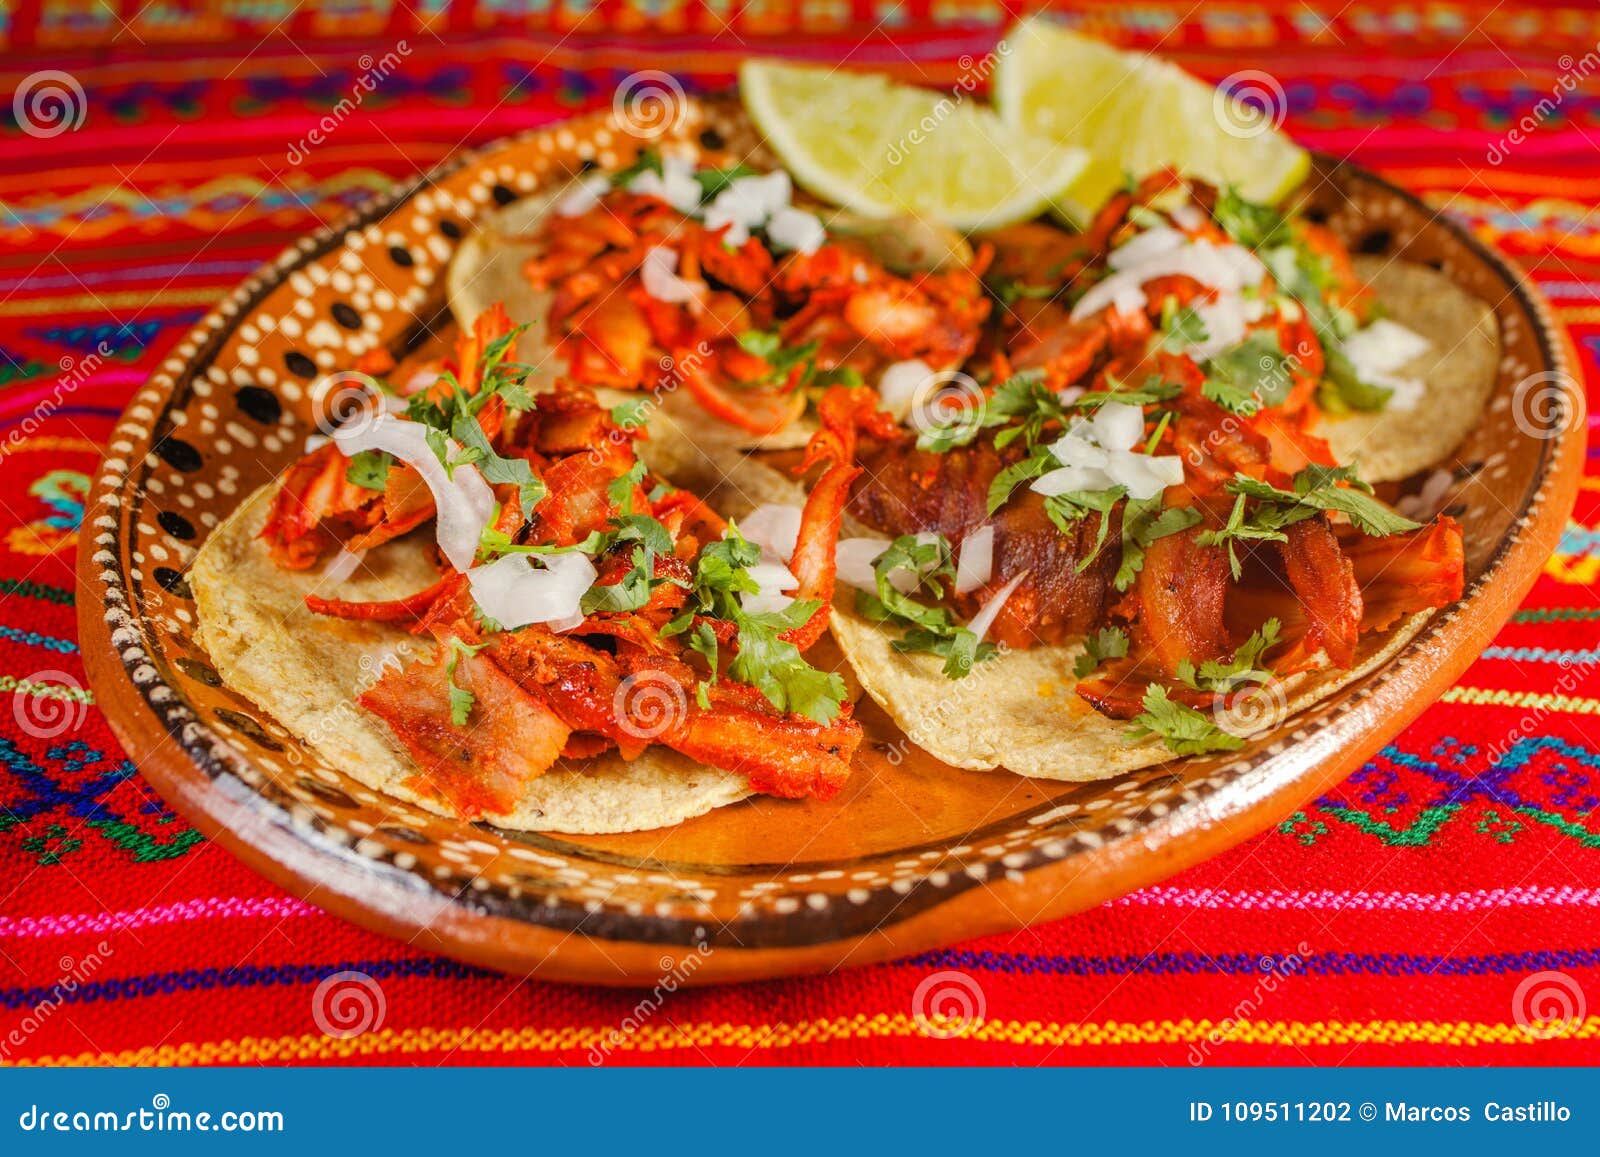 tacos al pastor mexican spicy food in mexico city